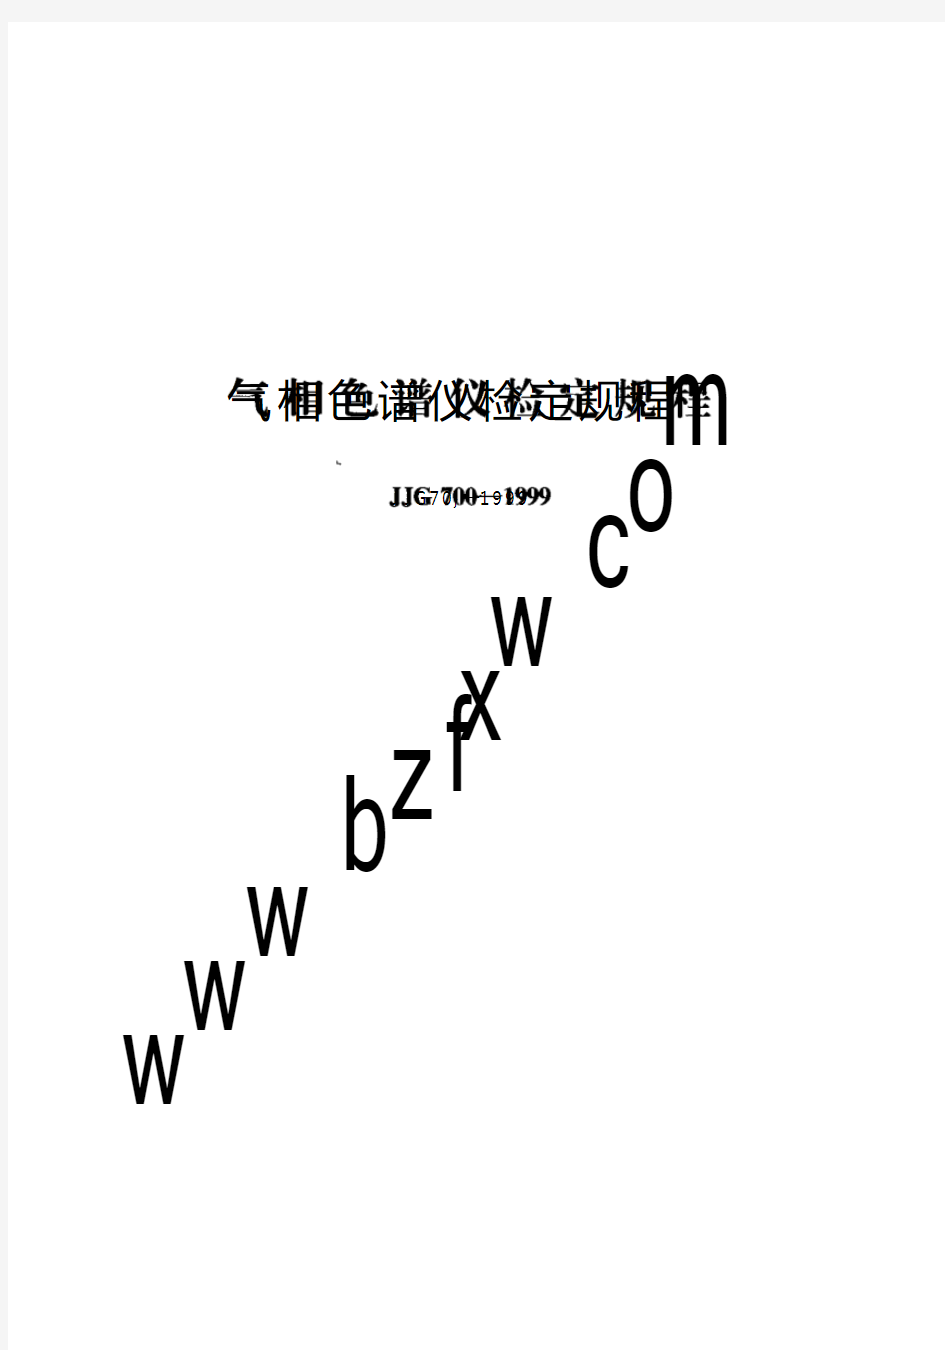 JJG700-1999 气相色谱仪检定规程